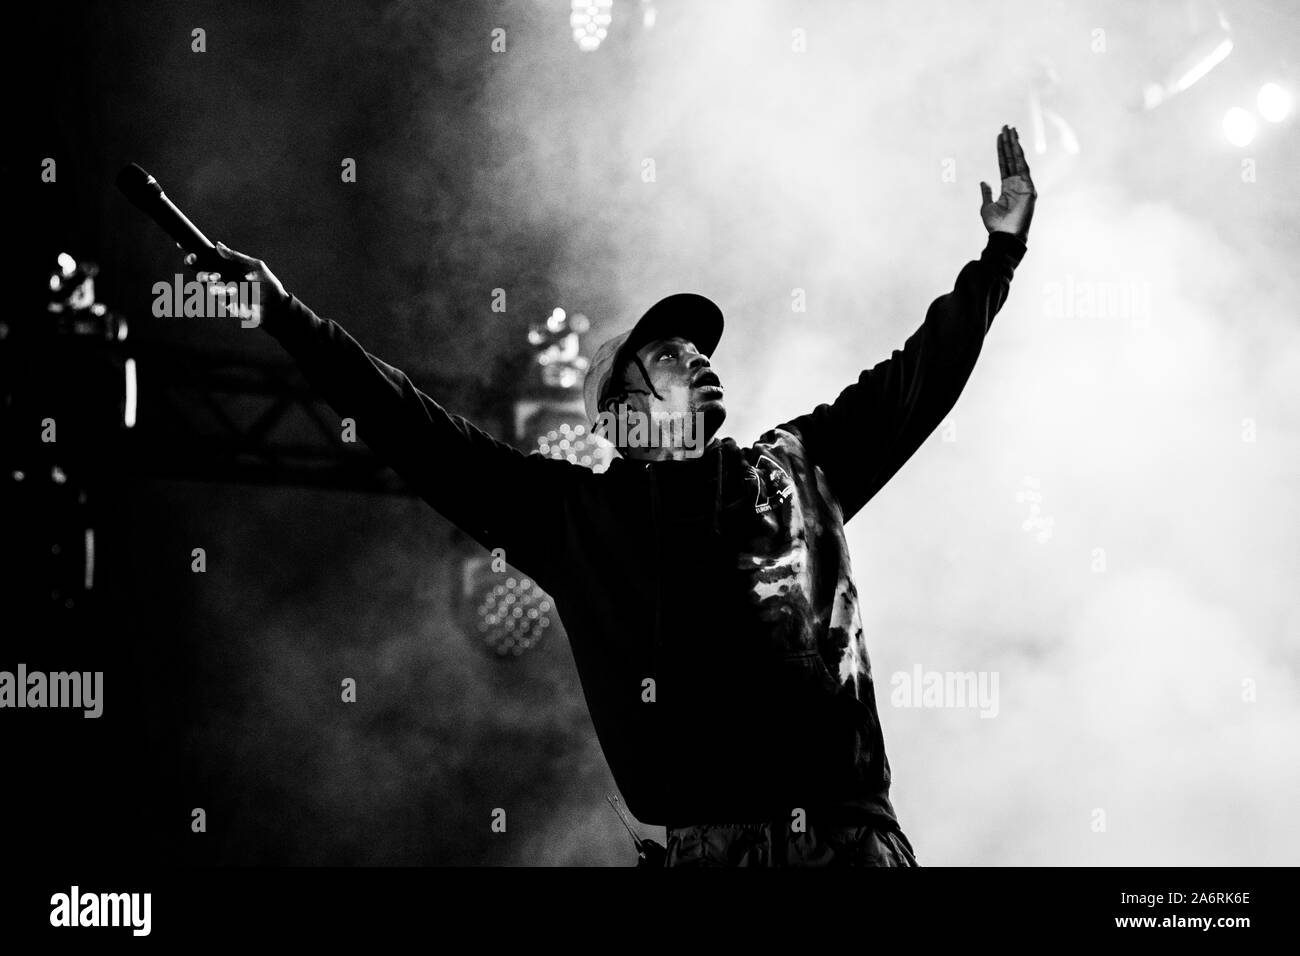 Travis scott rapper Imágenes de stock en blanco y negro - Alamy